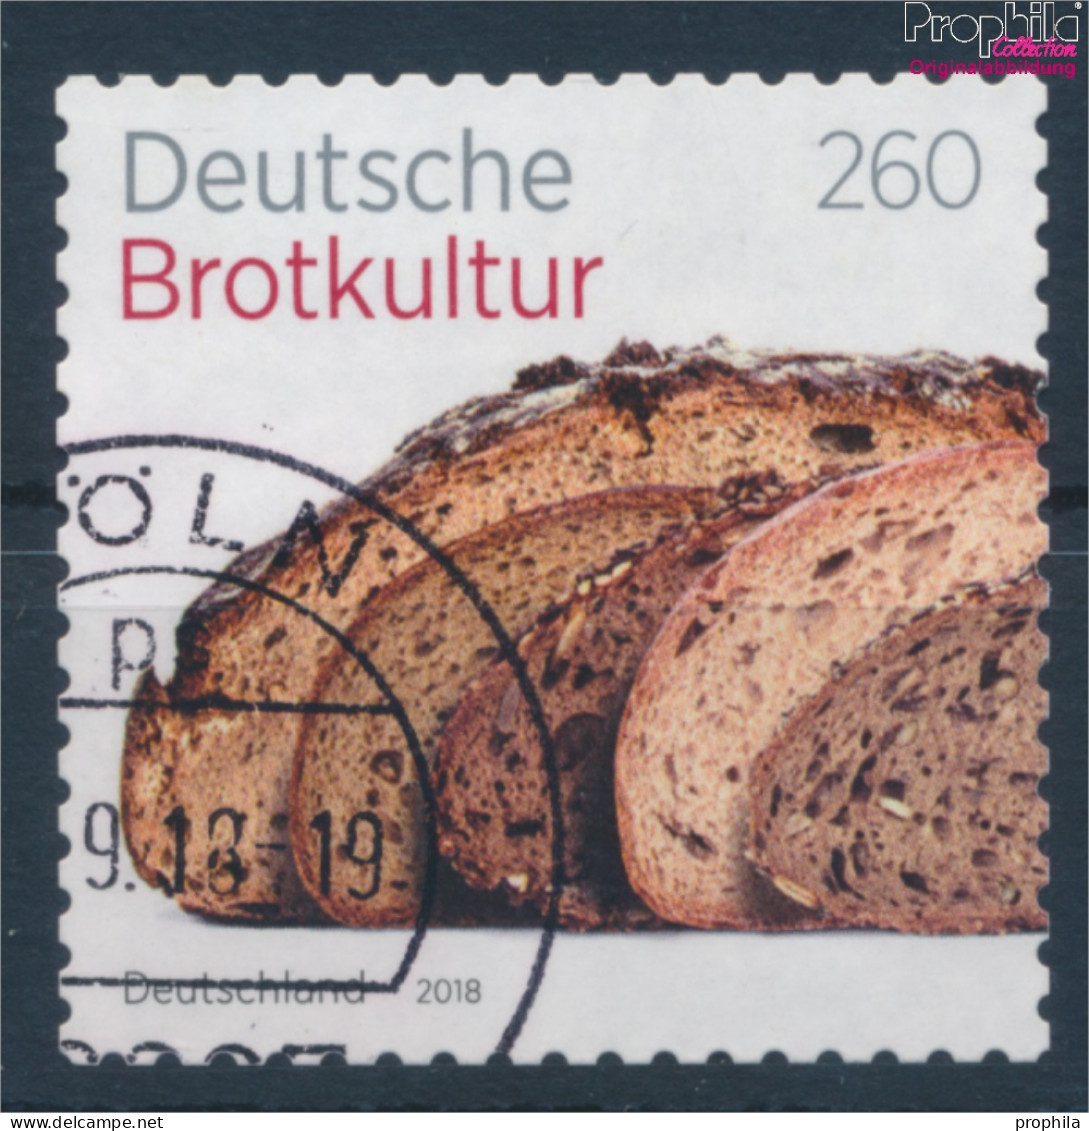 BRD 3390 (kompl.Ausg.) Selbstklebende Ausgabe Gestempelt 2018 Deutsche Brotkultur (10352040 - Usati